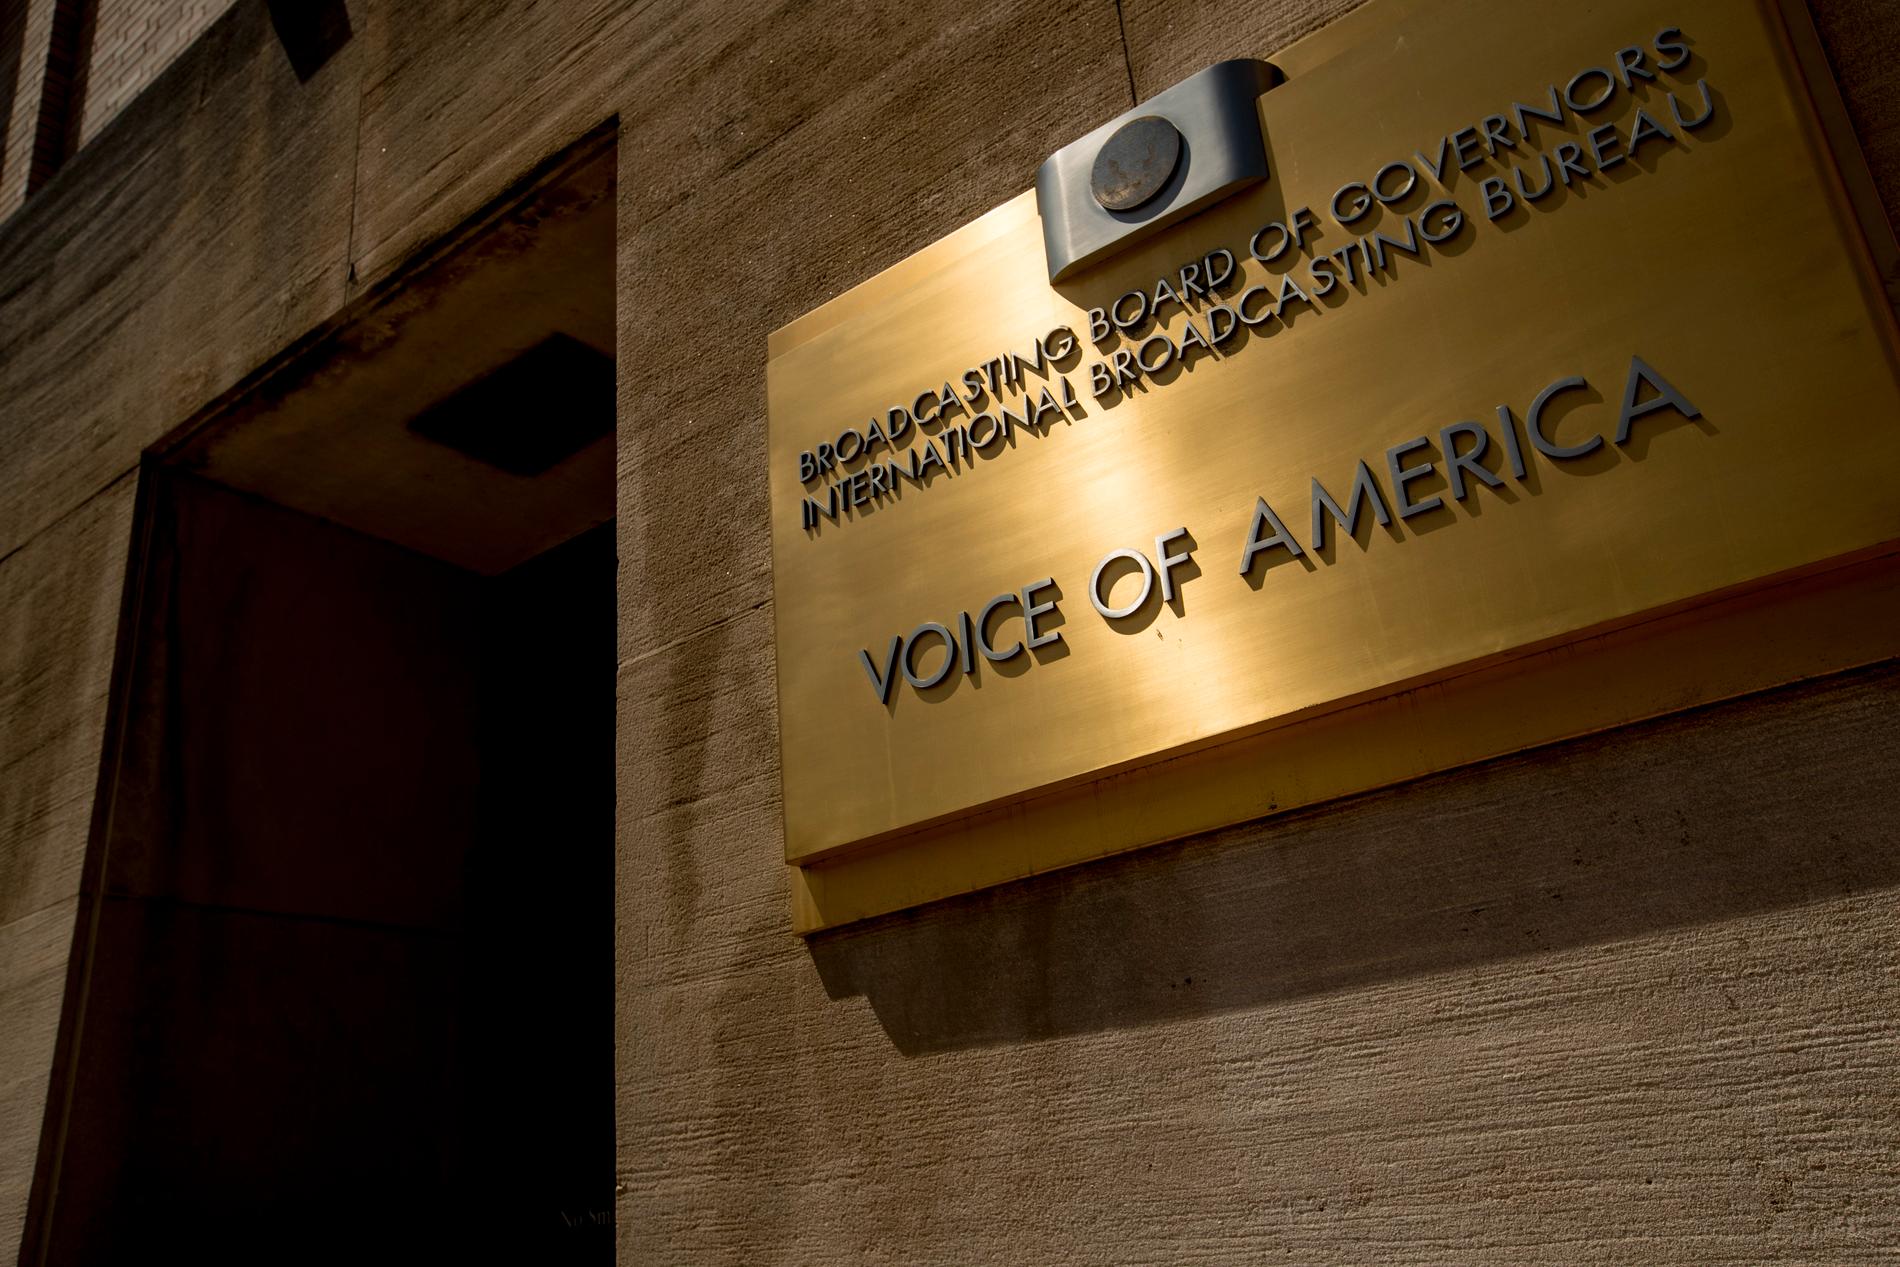 Amerikanska nyhetskanalen Voice of America får inte längre sändas i Turkiet. Arkivbild, redaktionsbyggnaden i Washington, USA.